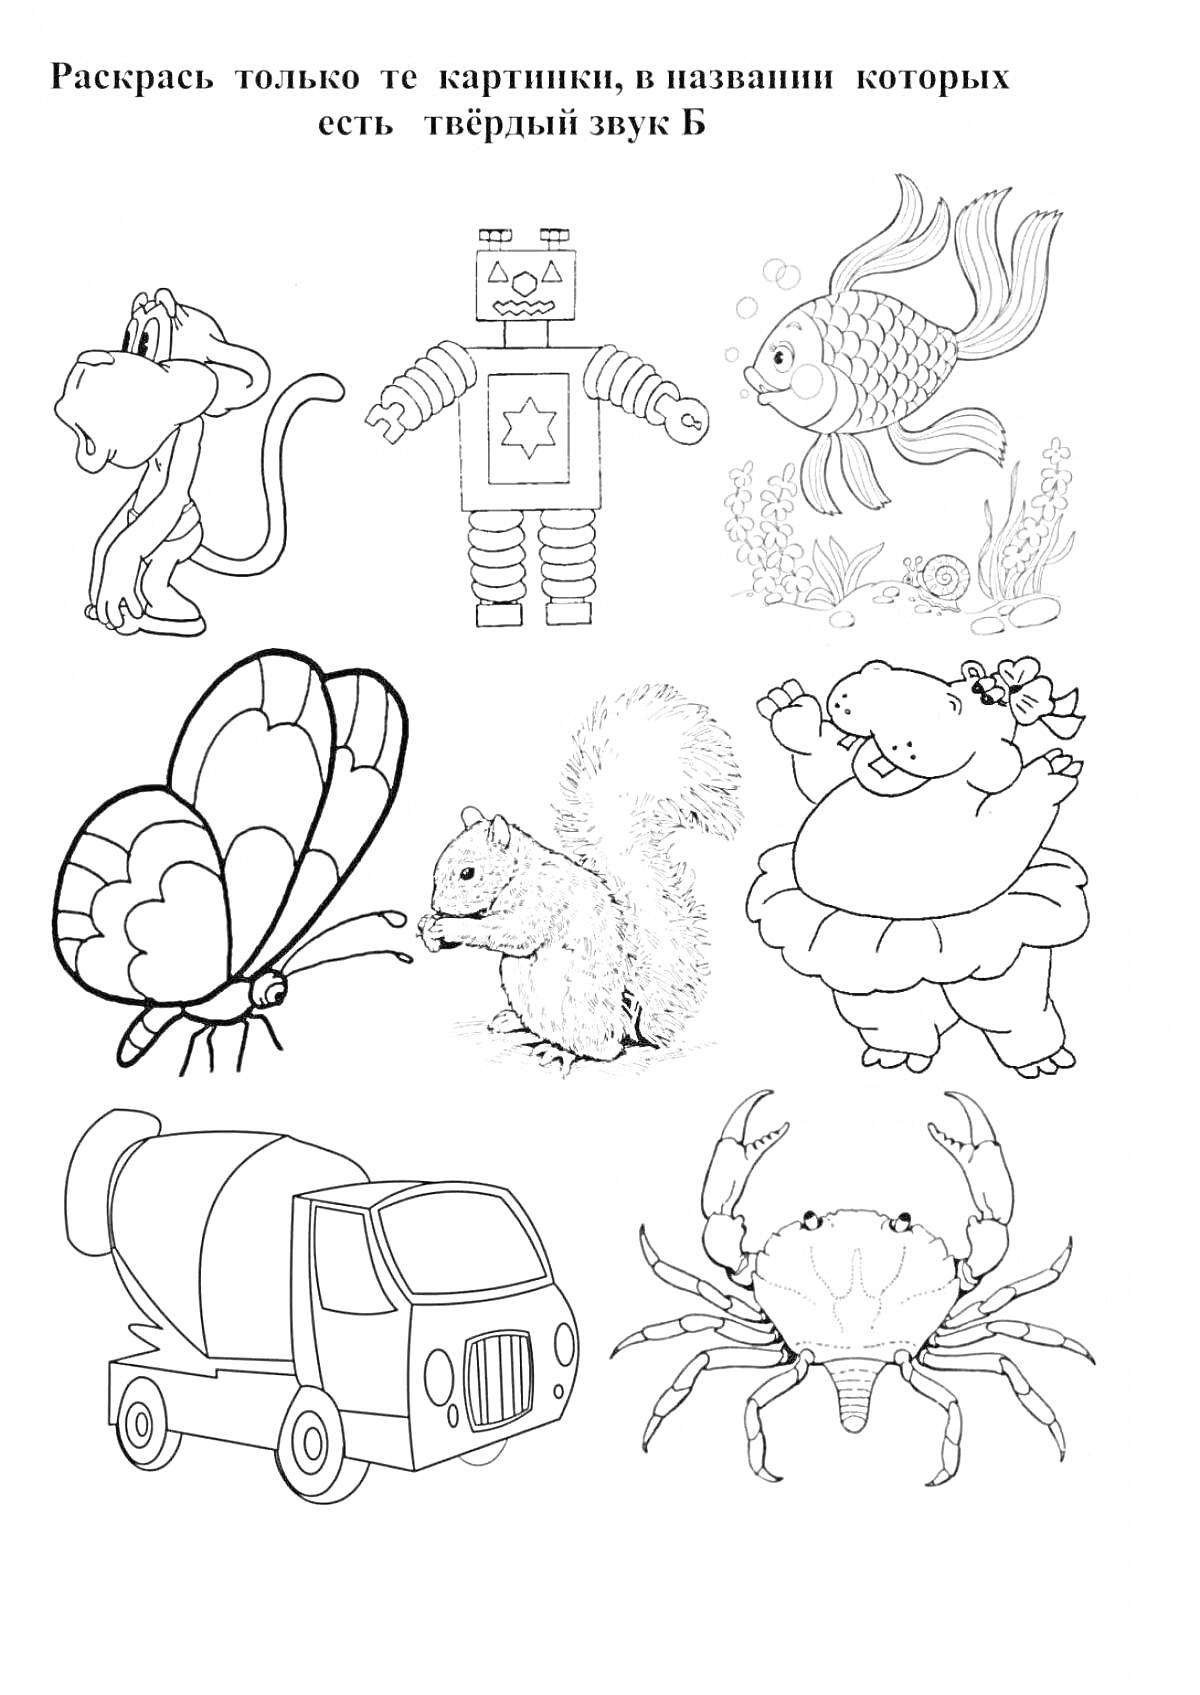 На раскраске изображено: Буква Б, Робот, Рыба, Бабочка, Белка, Медведь, Бетономешалка, Краб